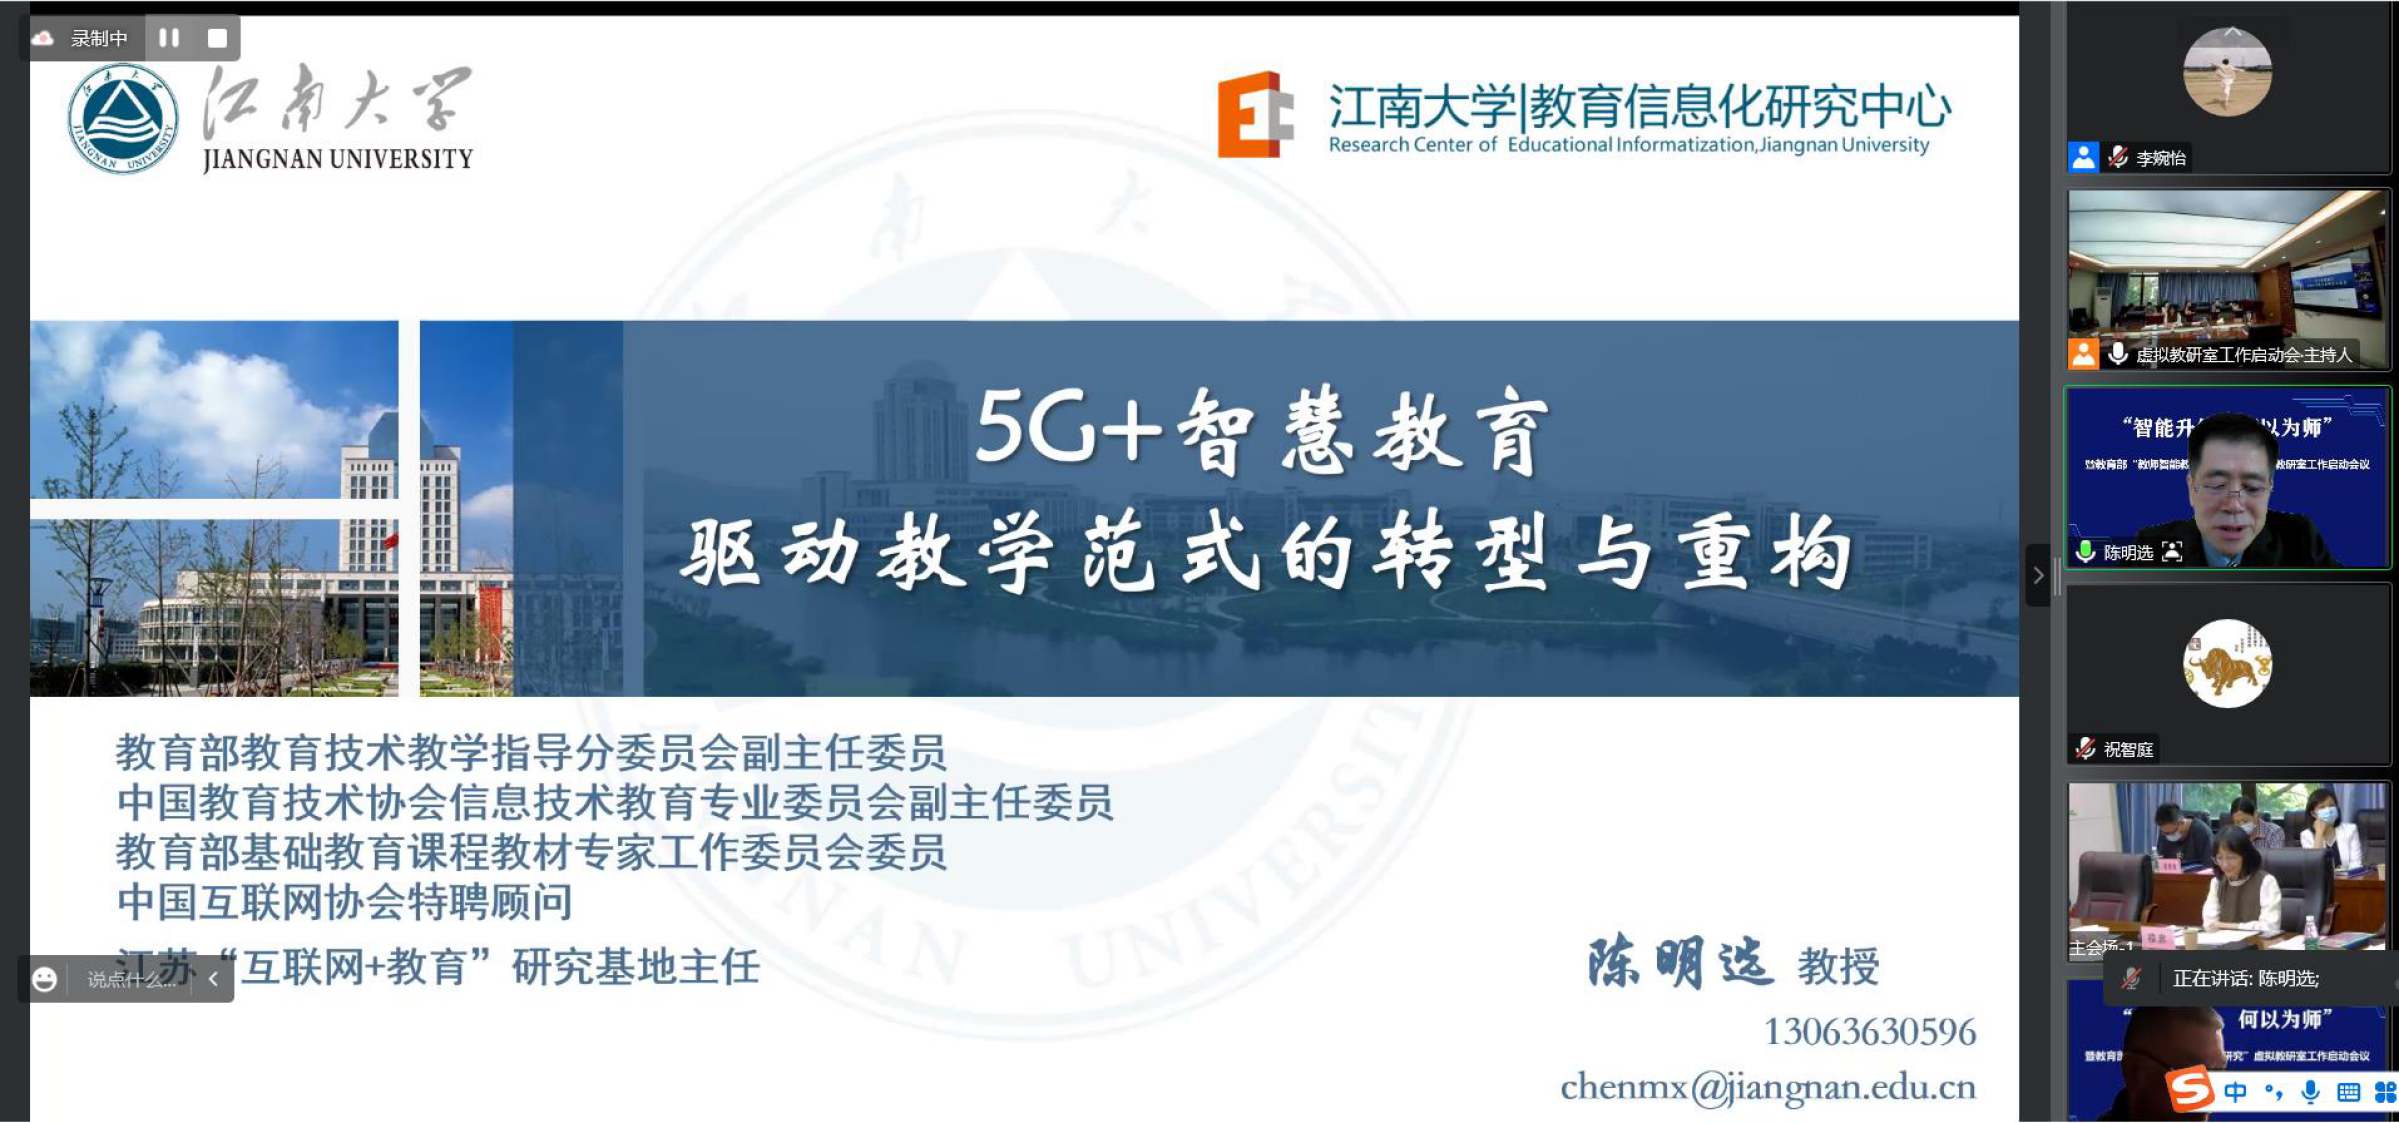 11.陈明选教授作《5G+智慧教育驱动教学范式的转型与重构》专题报告